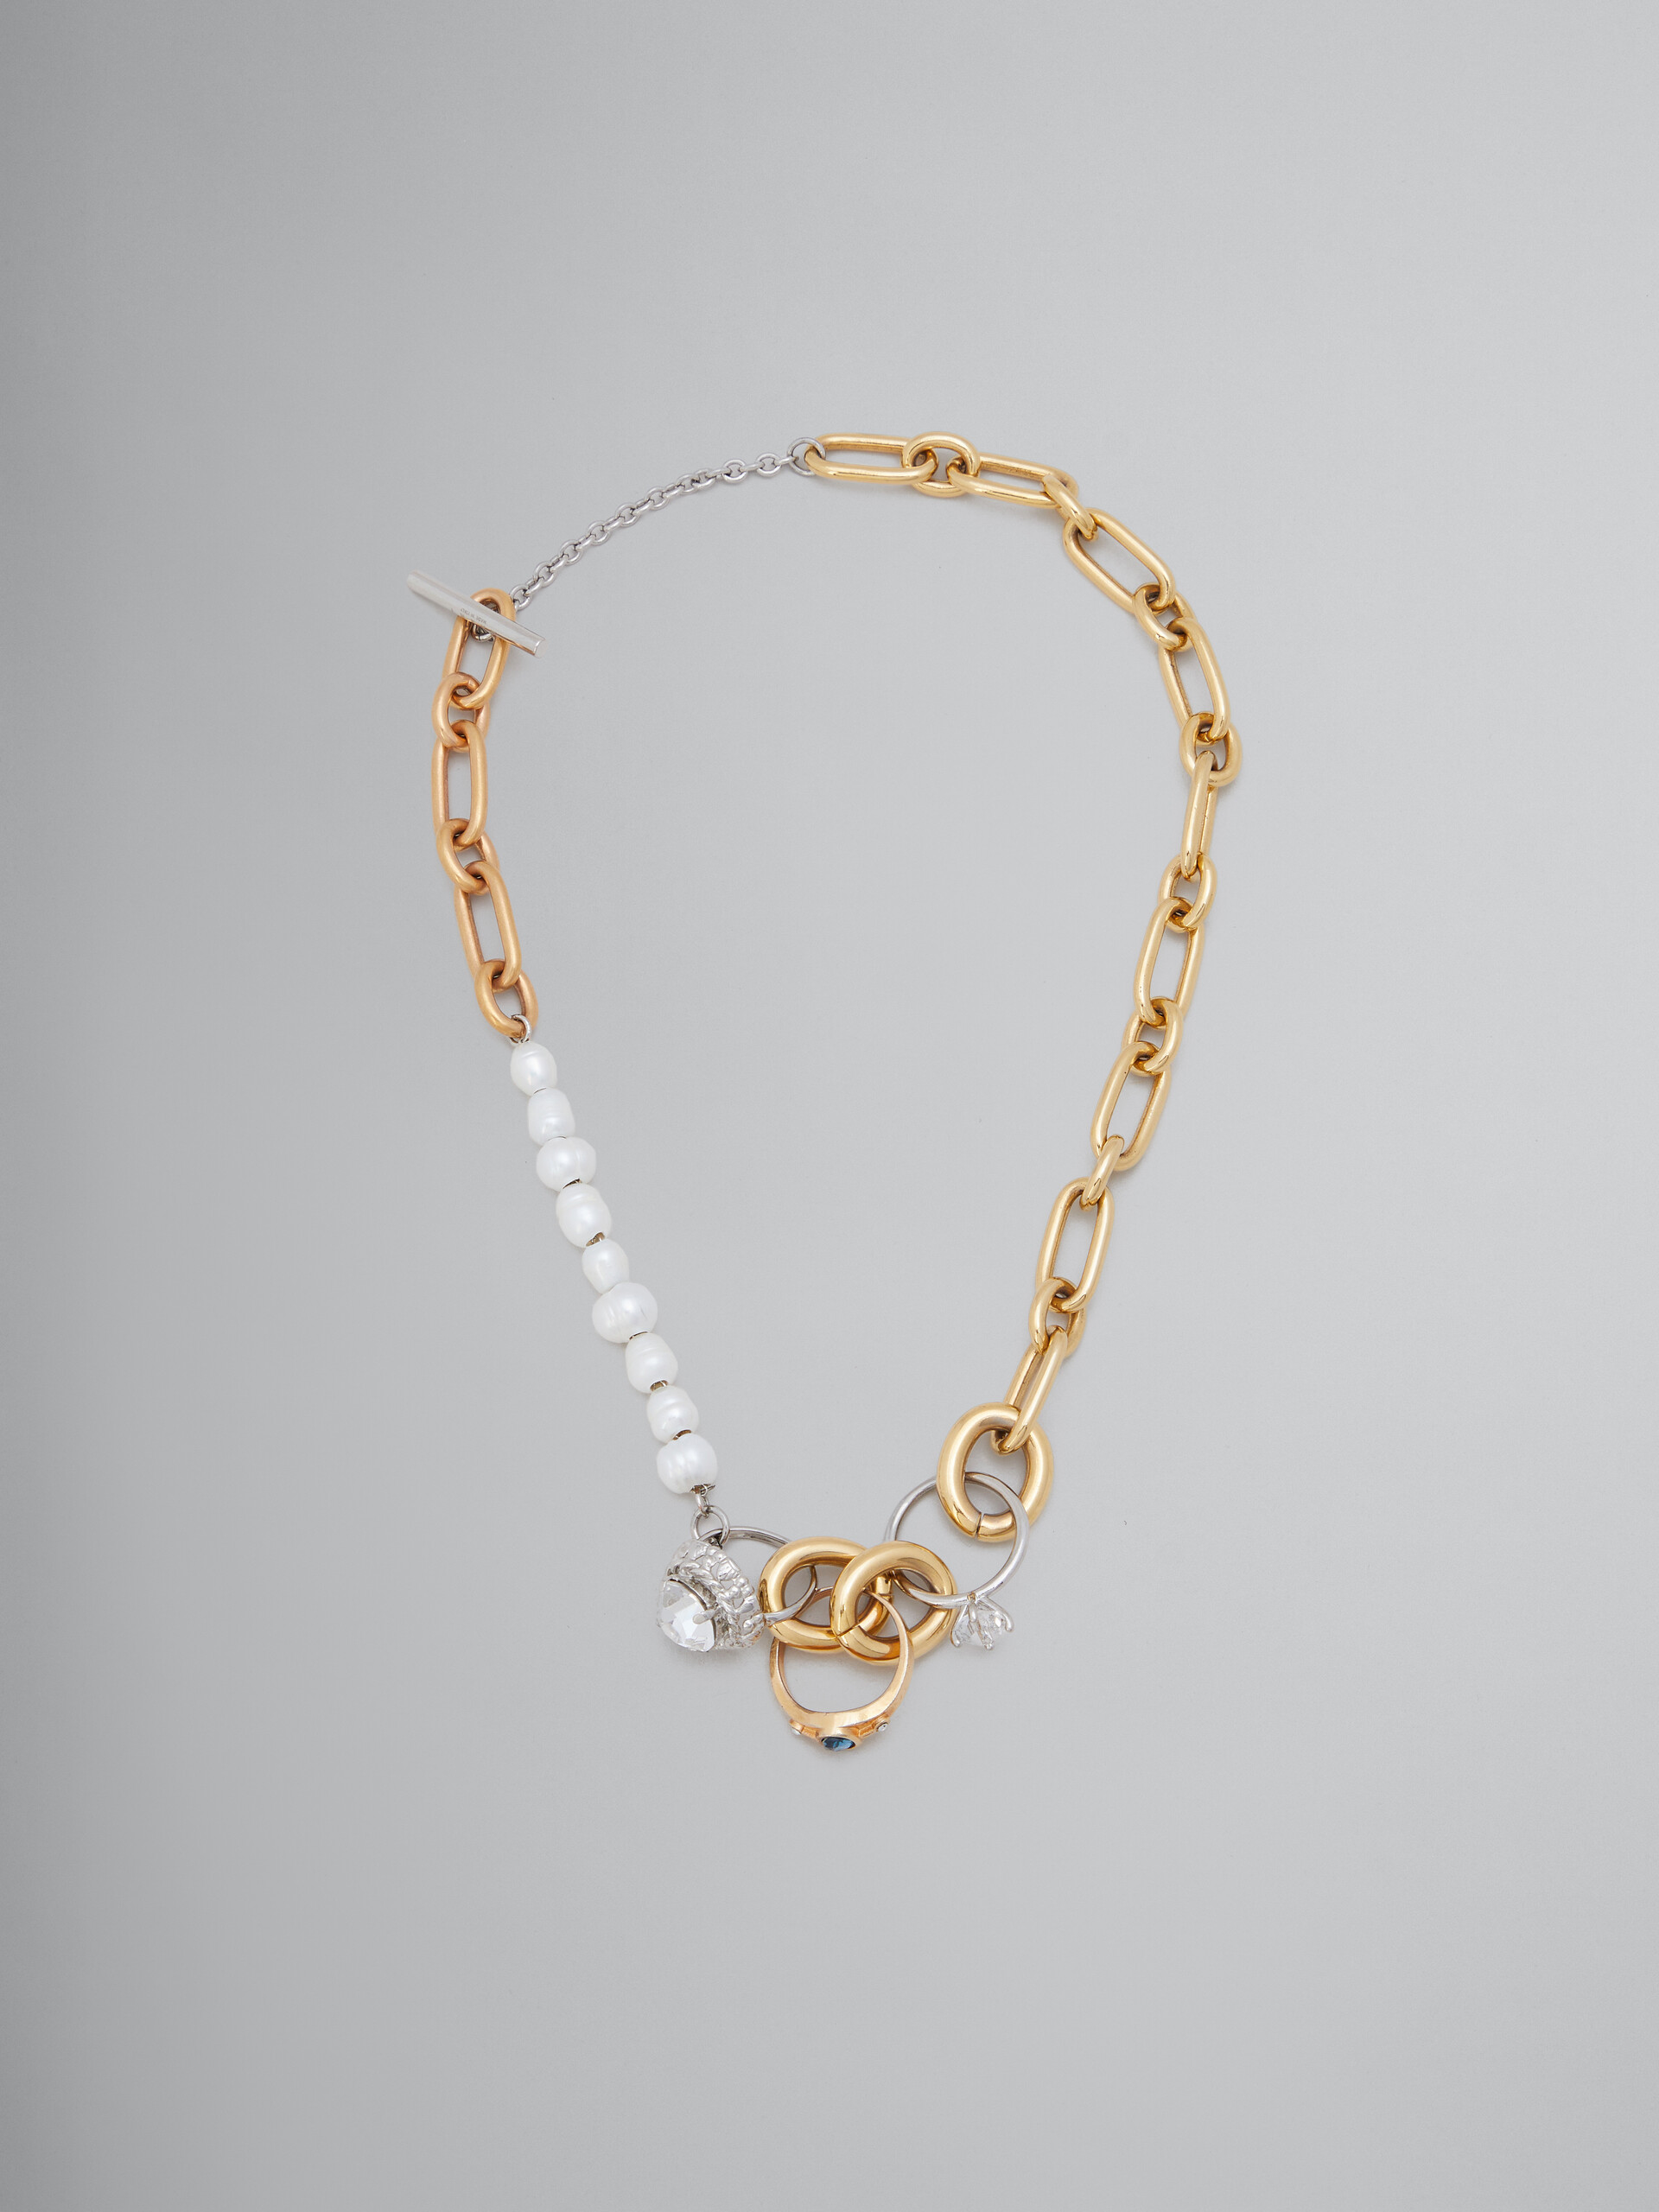 Collana con catena a maglie miste con perle e anelli gioiello - Collana - Image 1